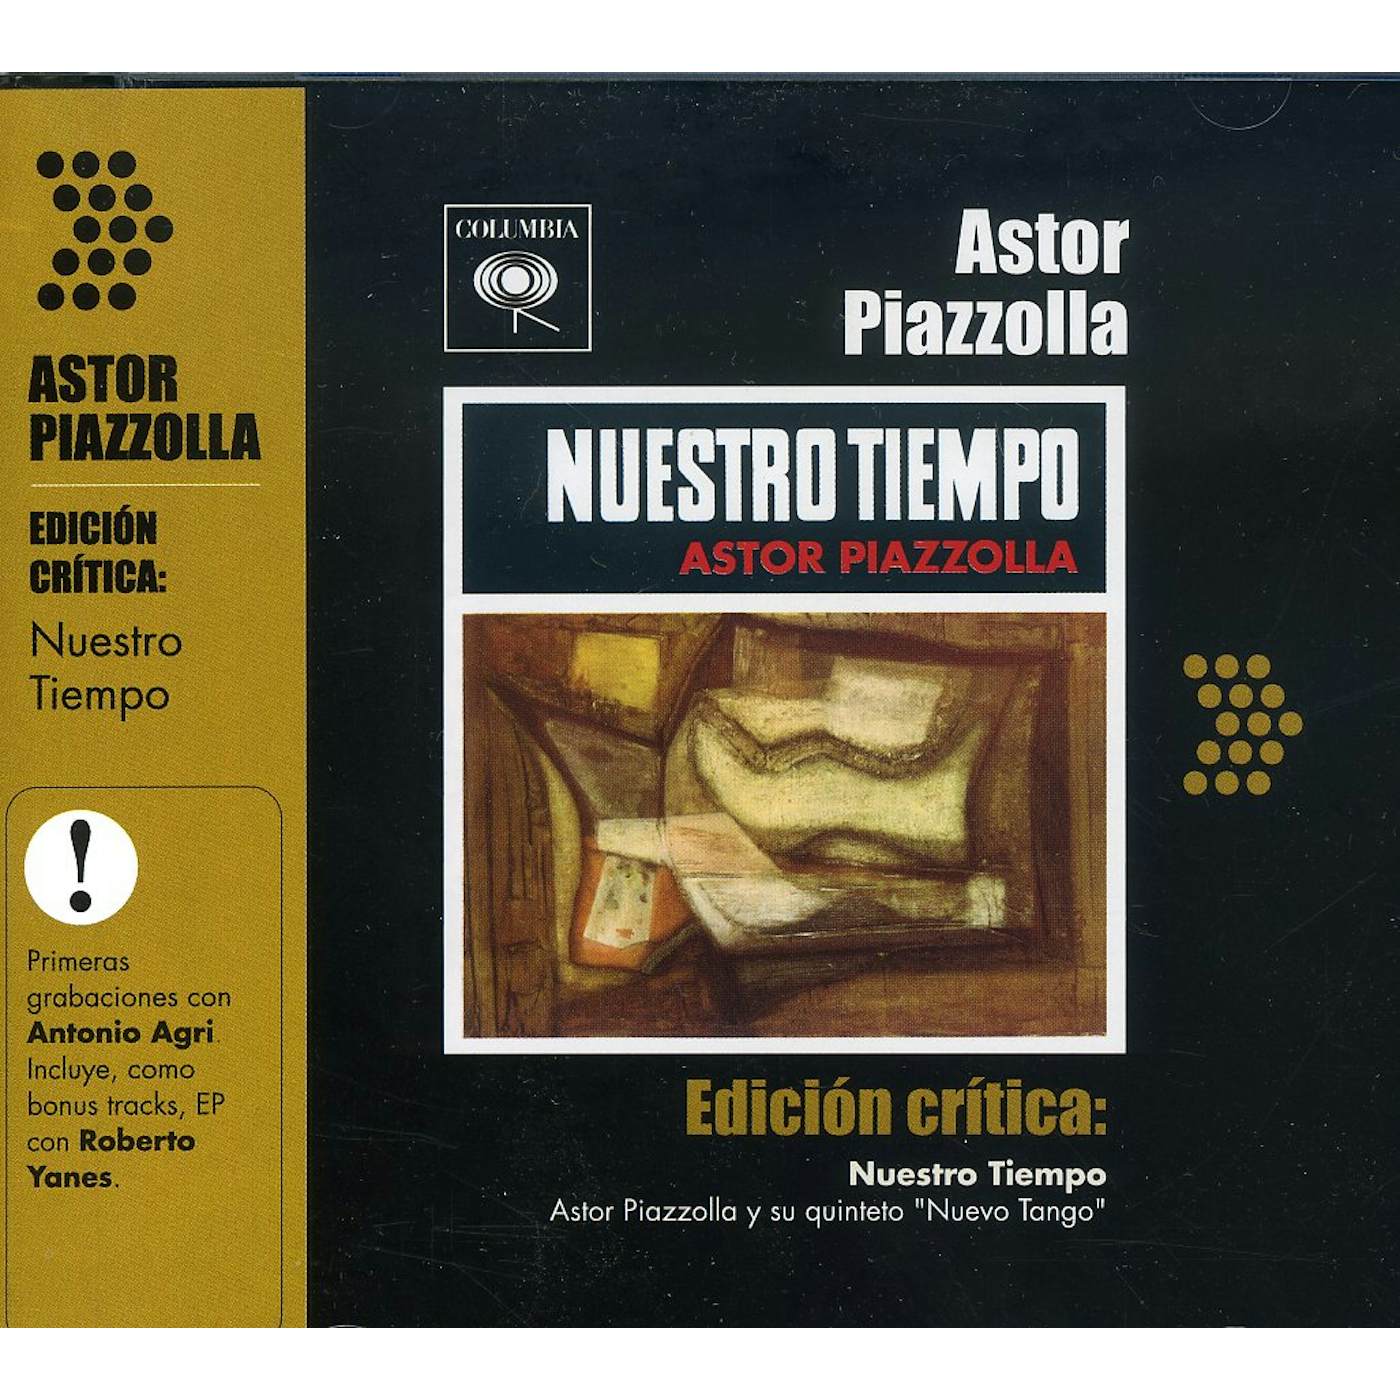 Astor Piazzolla EDICION CRITICA: NUESTRO TIEMPO CD